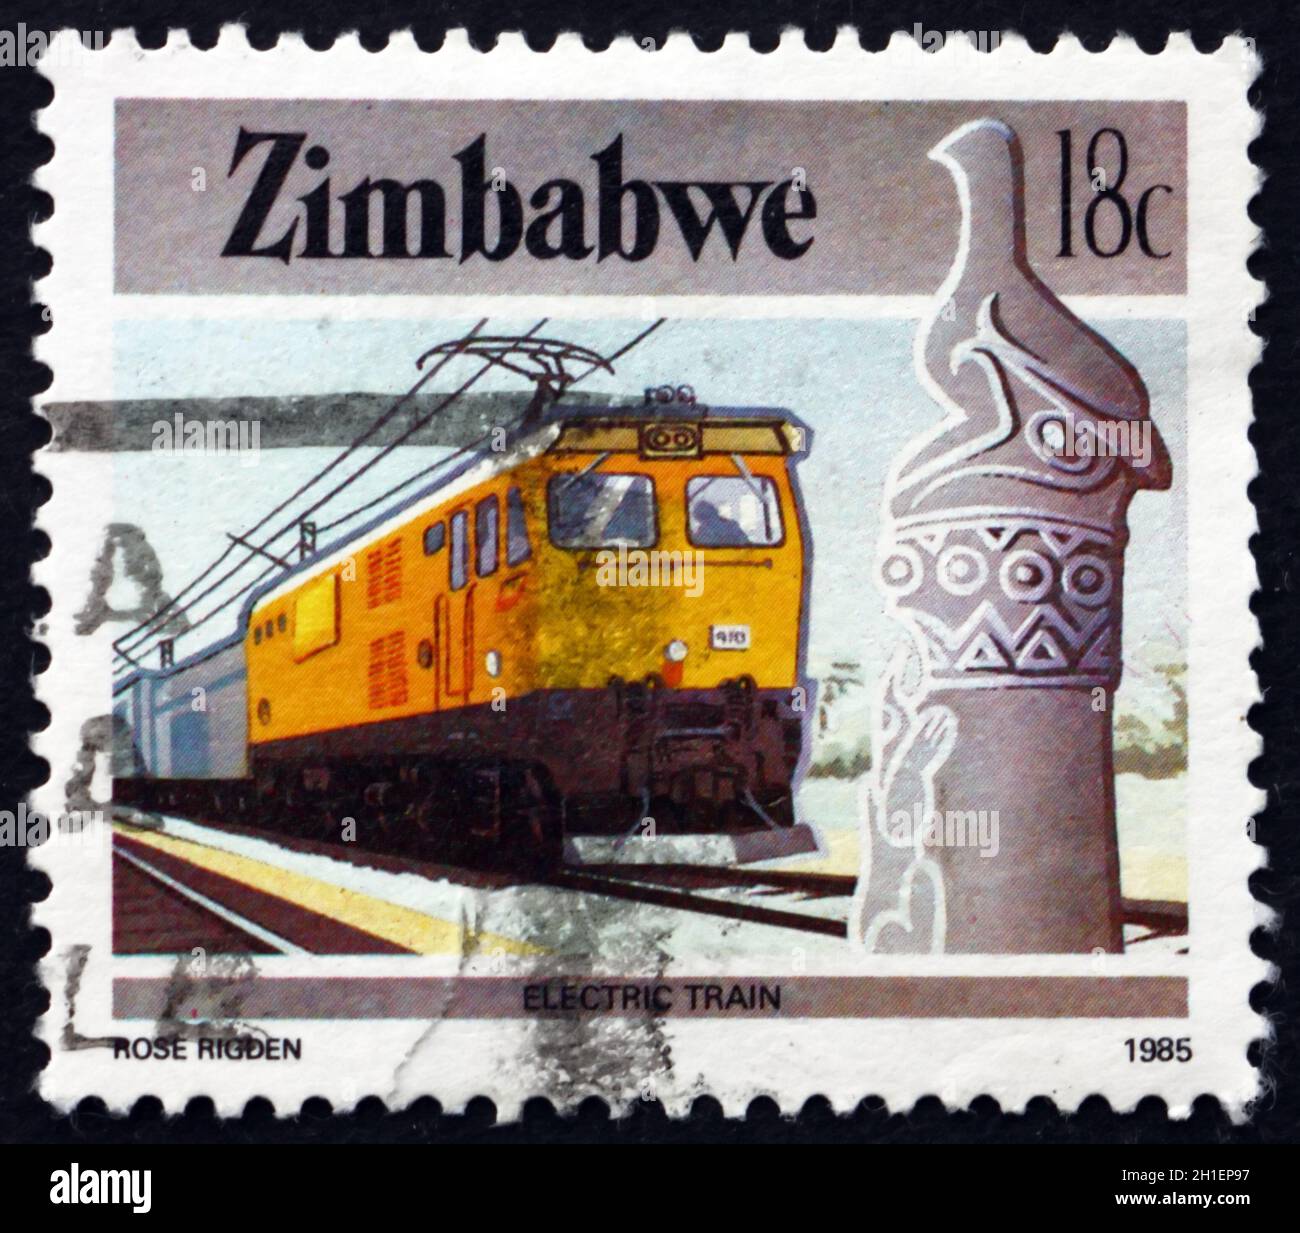 ZIMBABWE - VERS 1985: Un timbre imprimé au Zimbabwe montre le Zimbabwe oiseau et train électrique, vers 1985 Banque D'Images